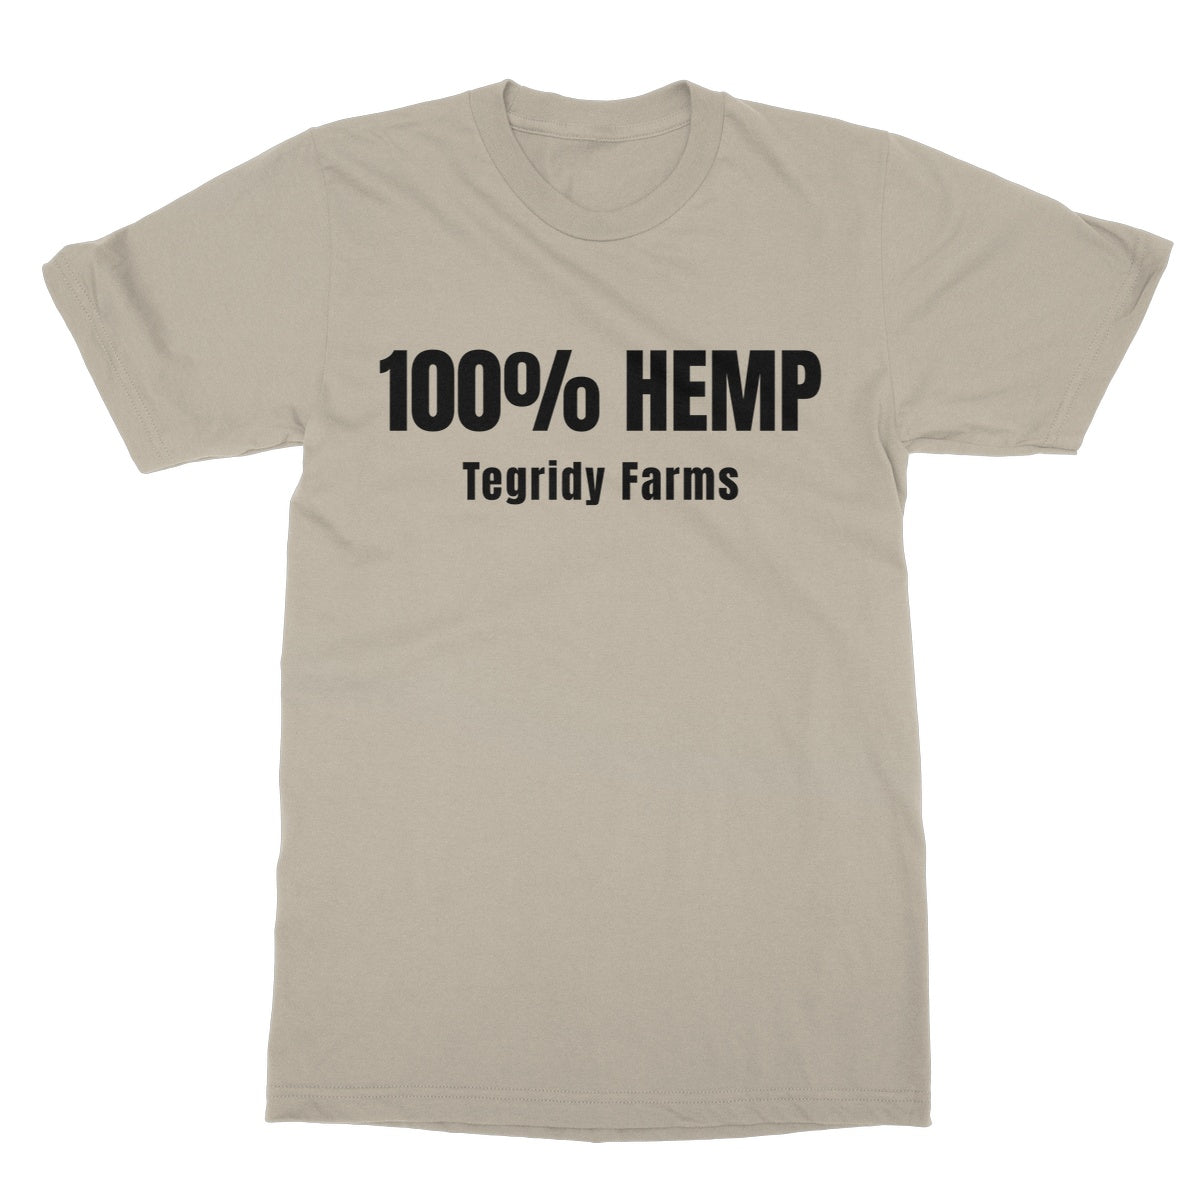 100% hemp south park t shirt